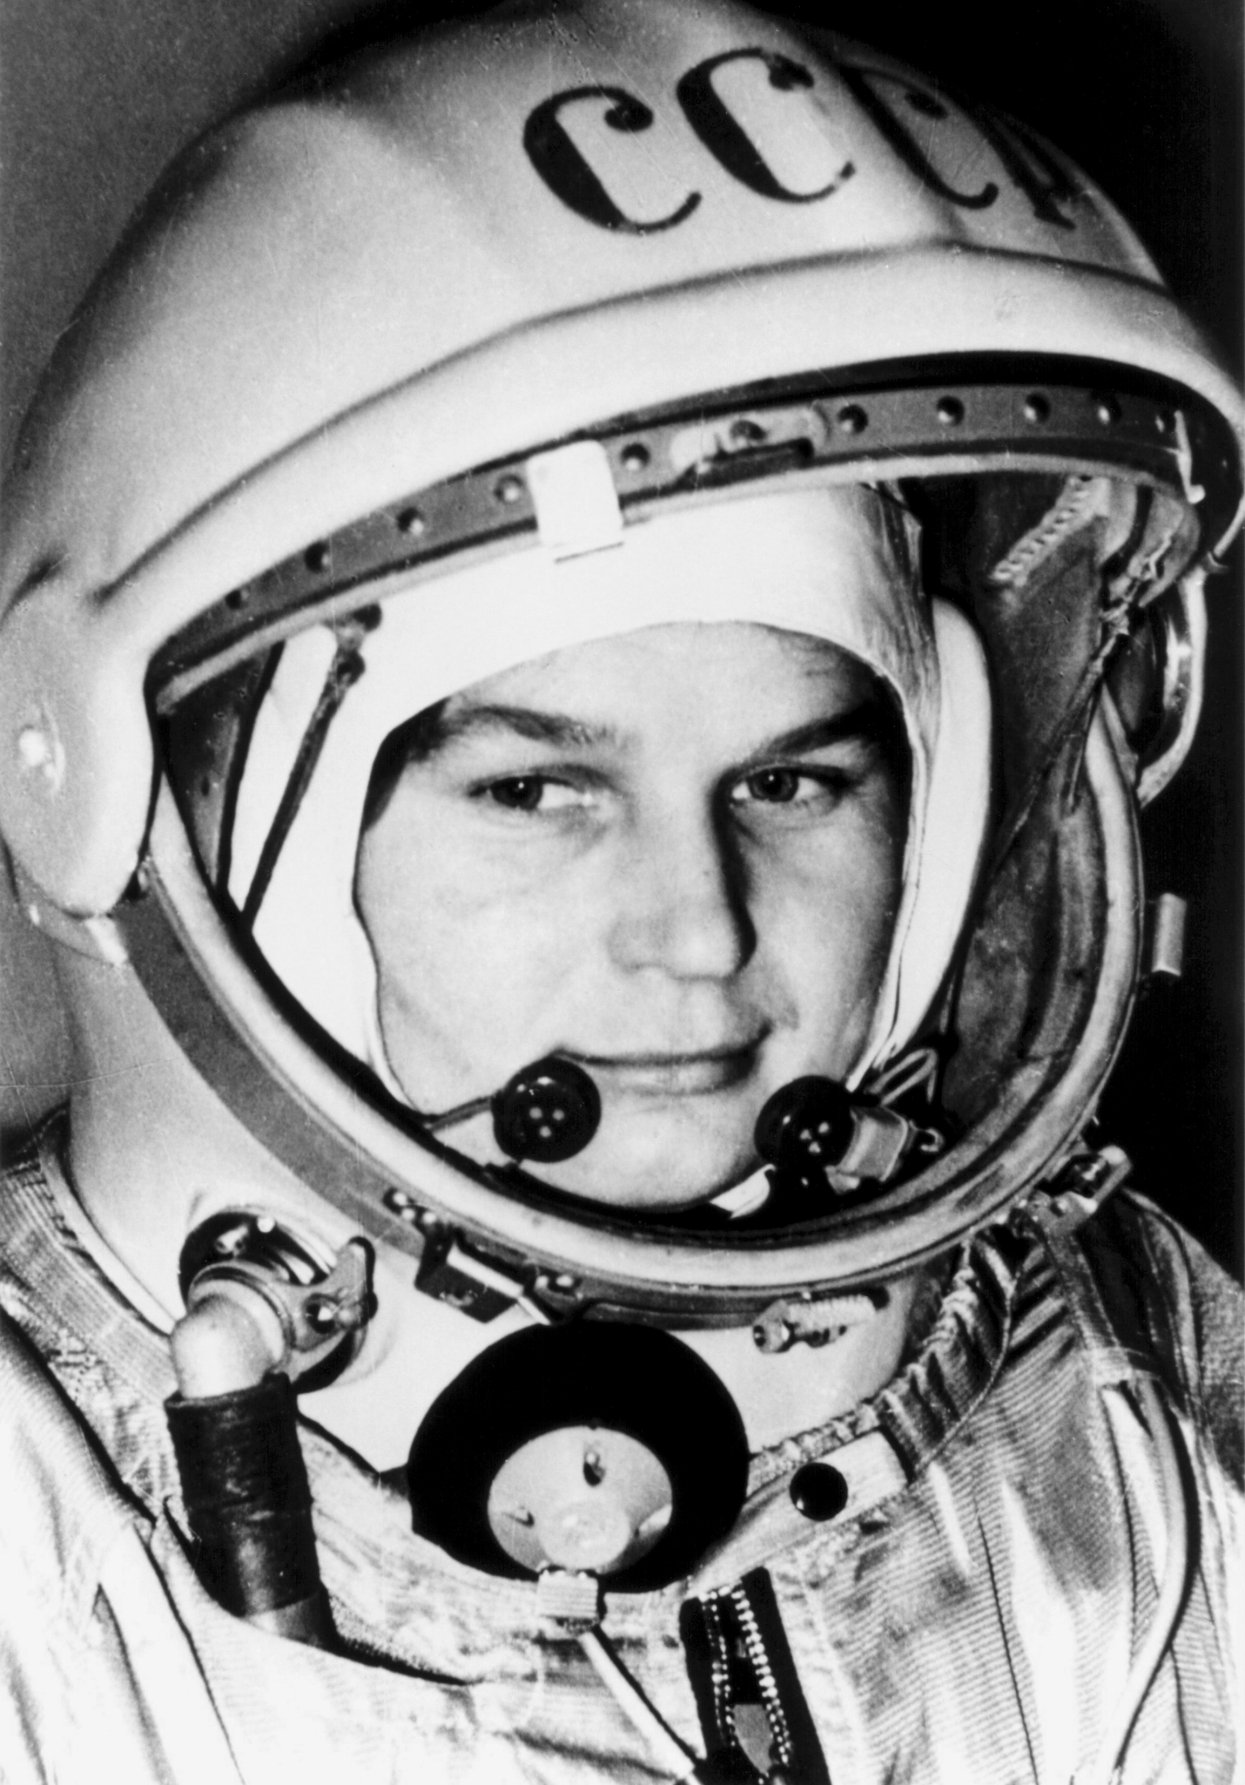 A very happy birthday to Valentina Tereshkova!  